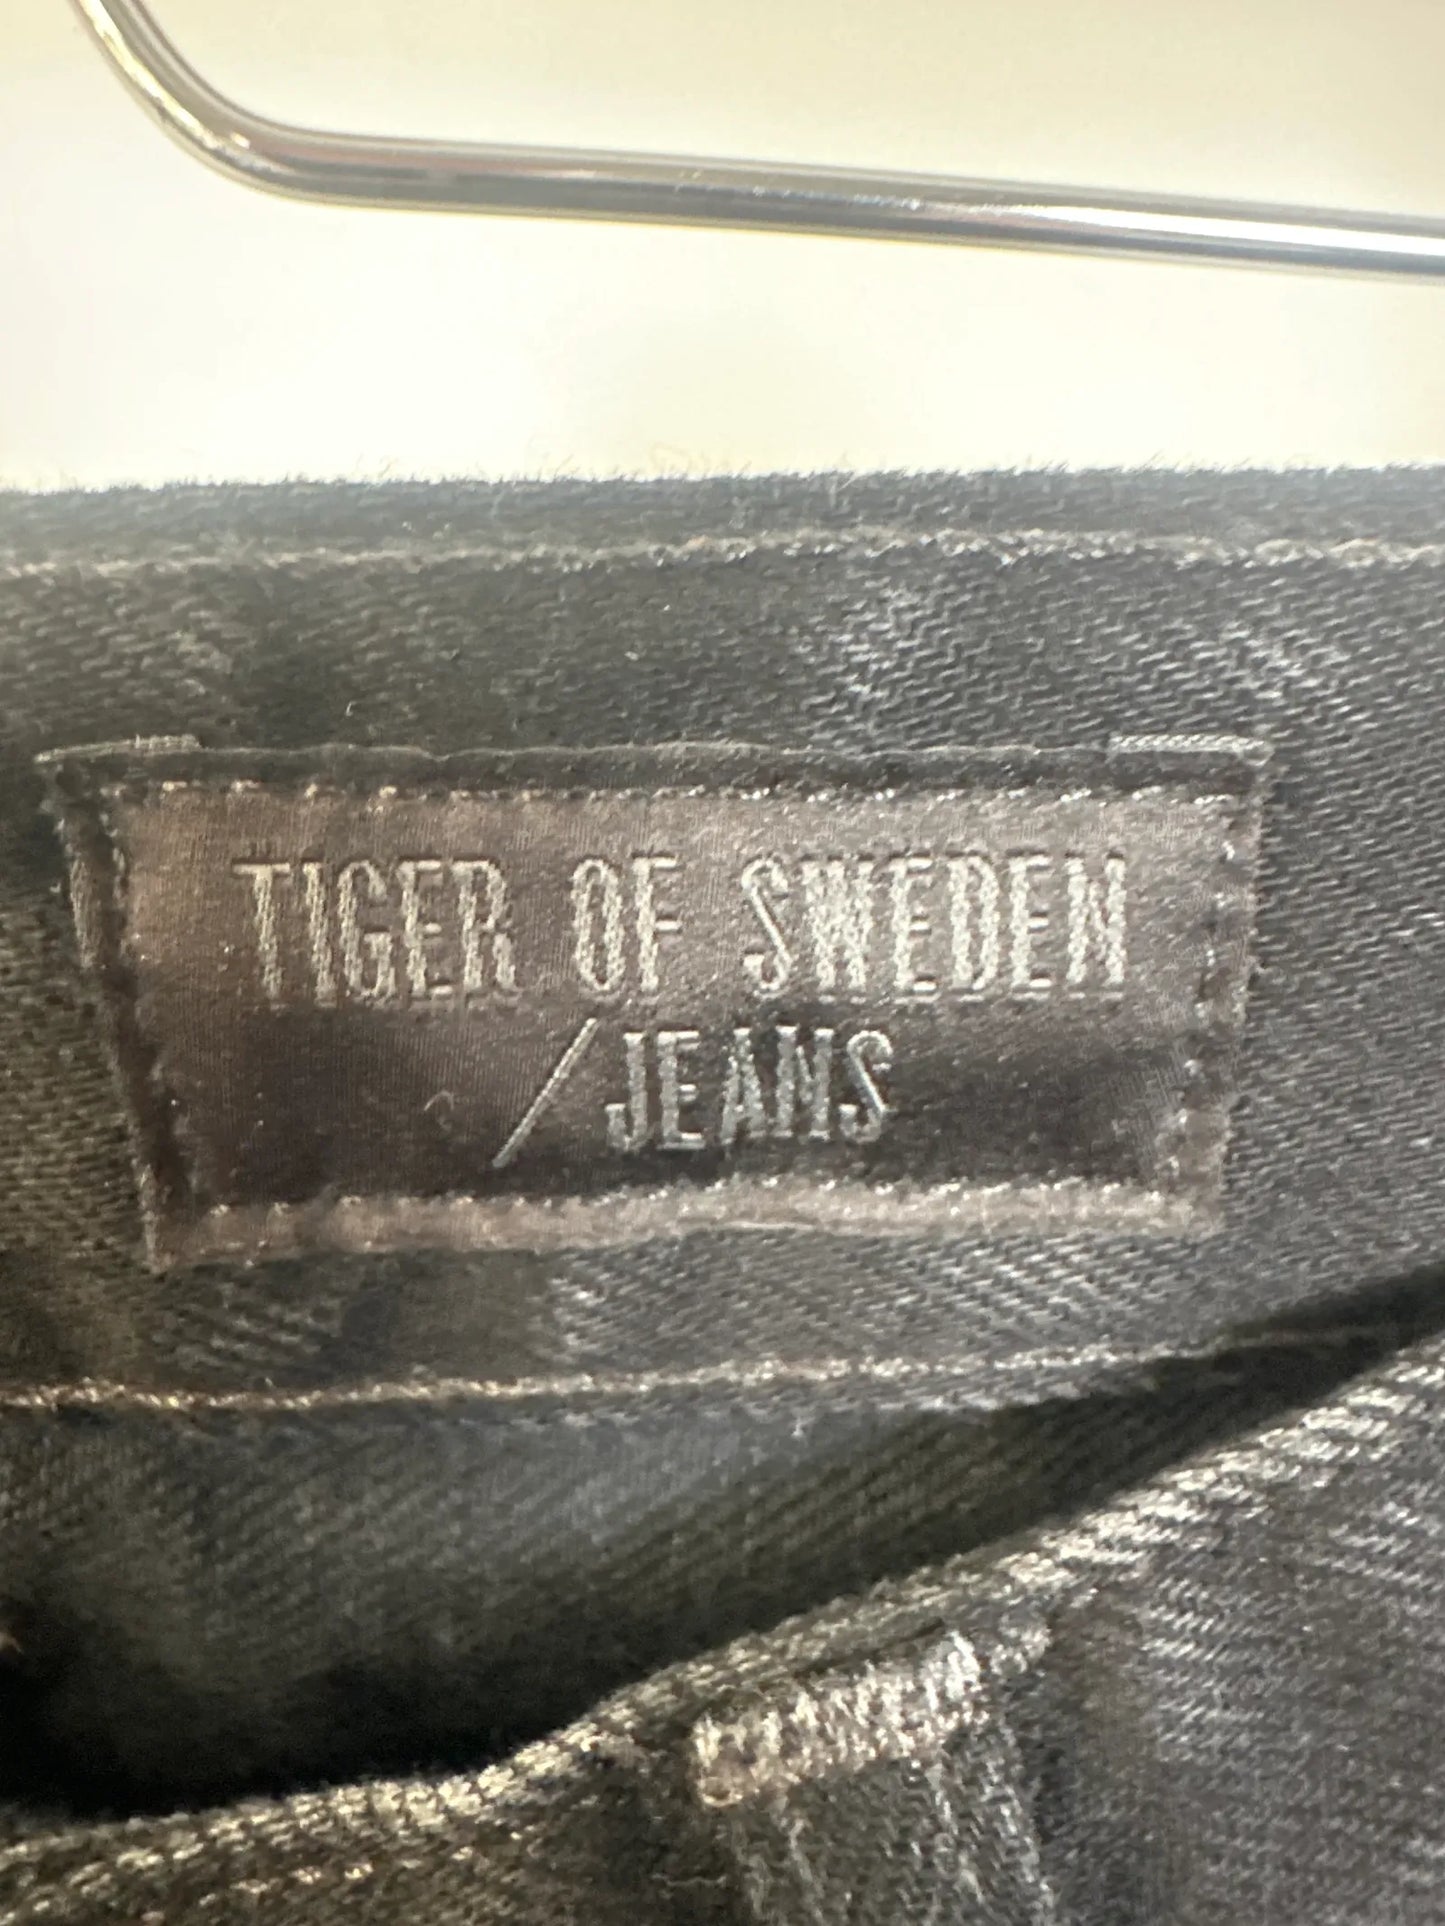 Tiger of Sweden-jeans